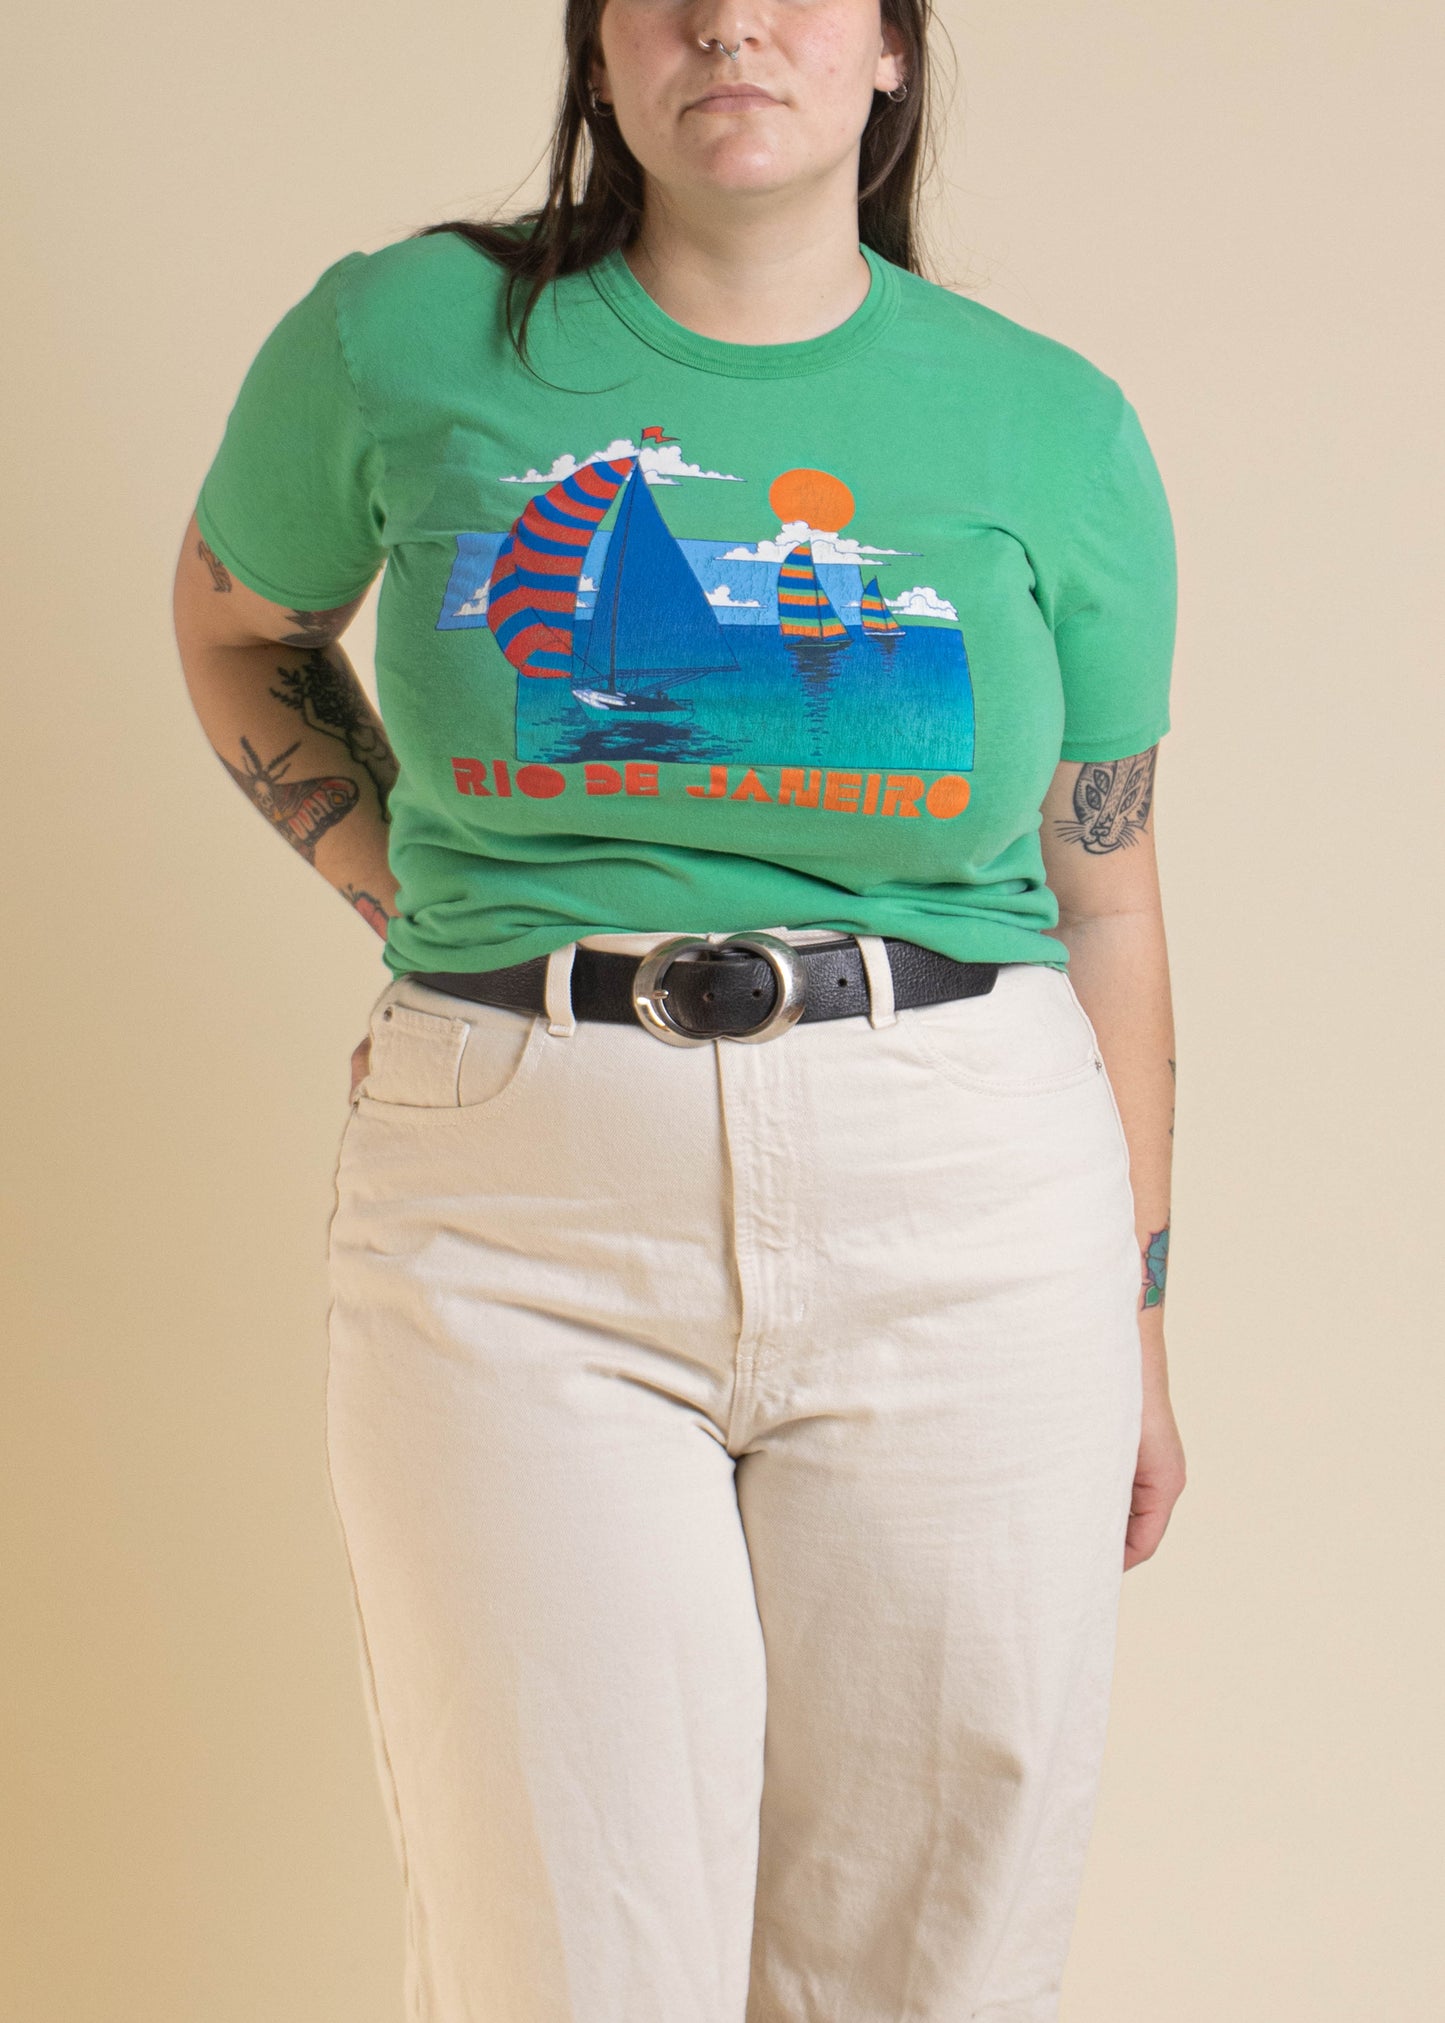 1980s Rio de Janeiro Souvenir T-Shirt Size M/L